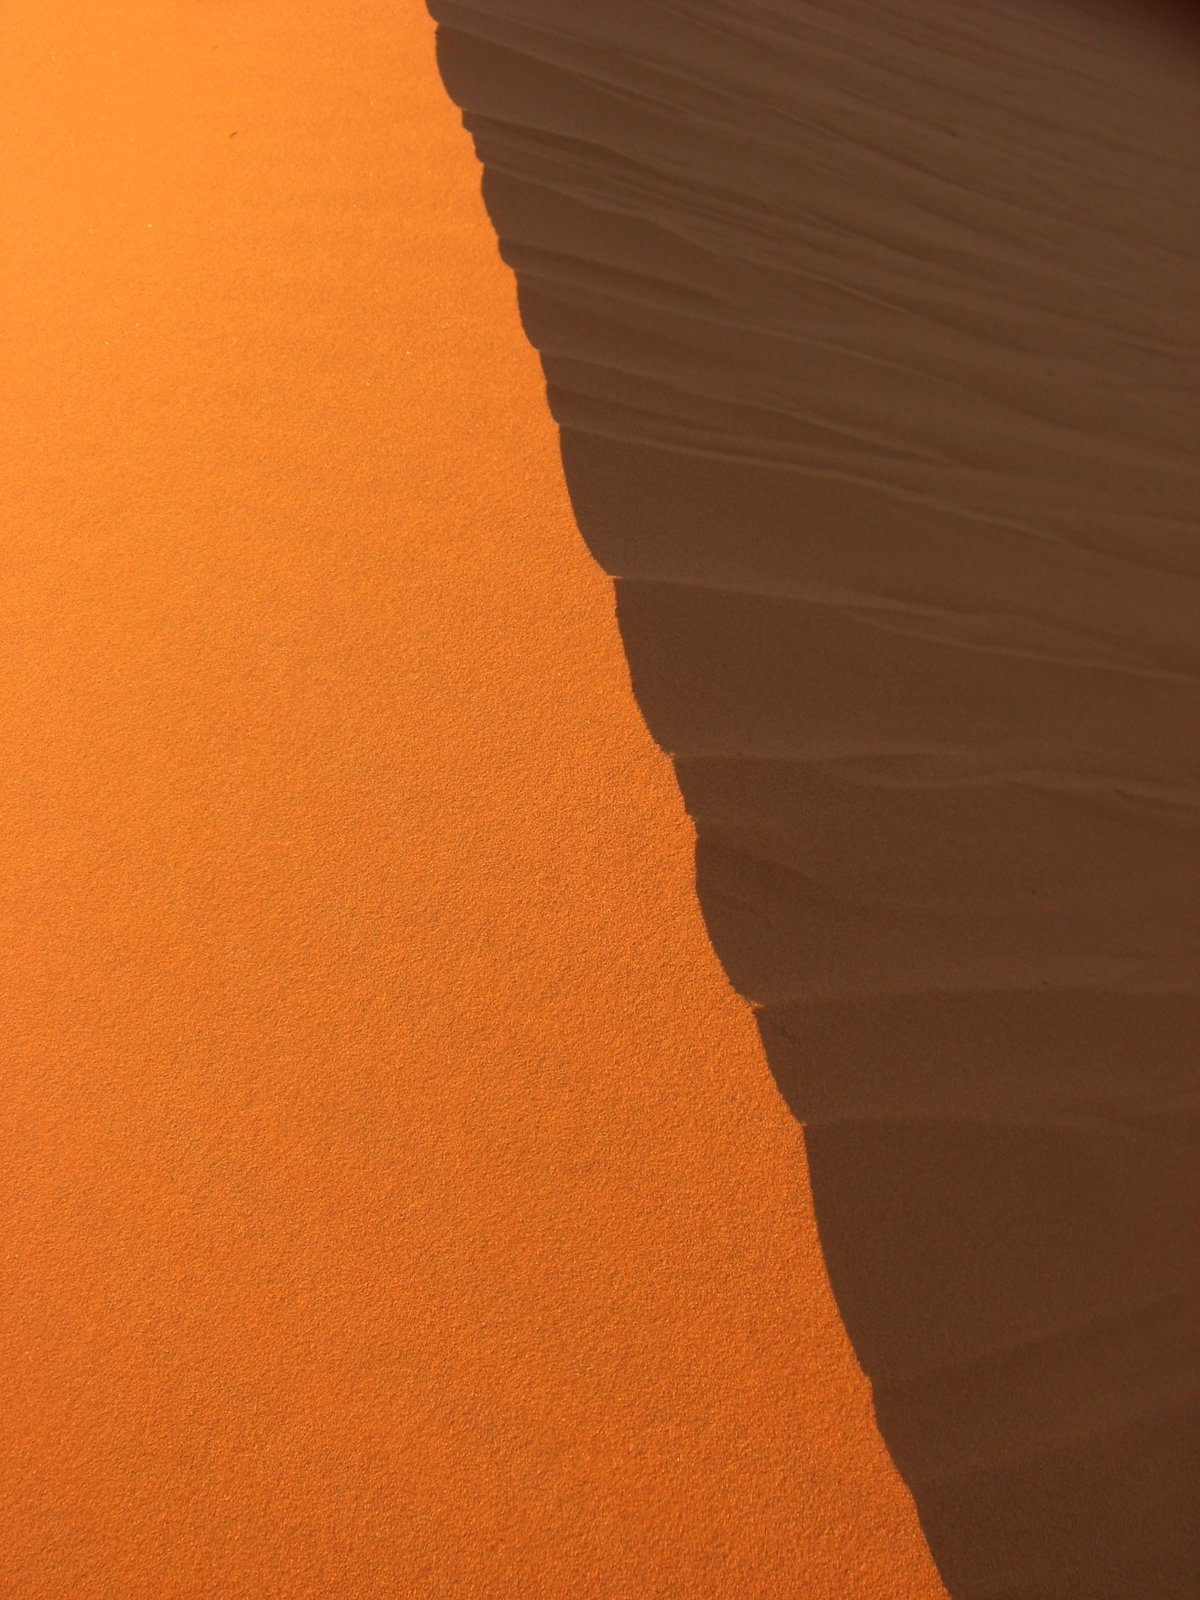 砂丘の稜線は、光の当たる赤色と、影の落ちる黒色とがくっきり分かれている